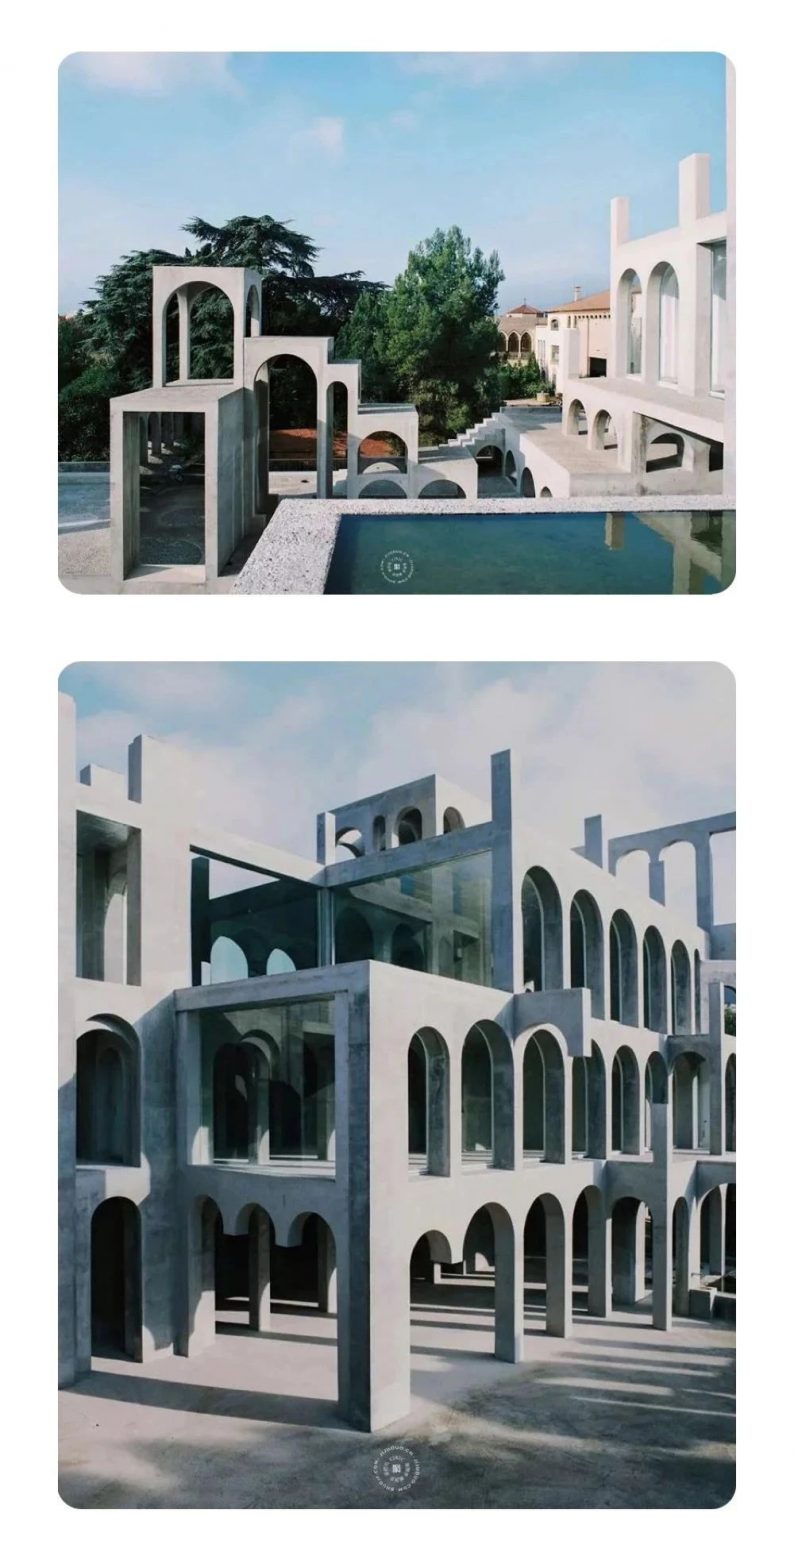 超现实主义建筑风格 超现实主义建筑,以西班牙艺术家泽维尔·科贝尔